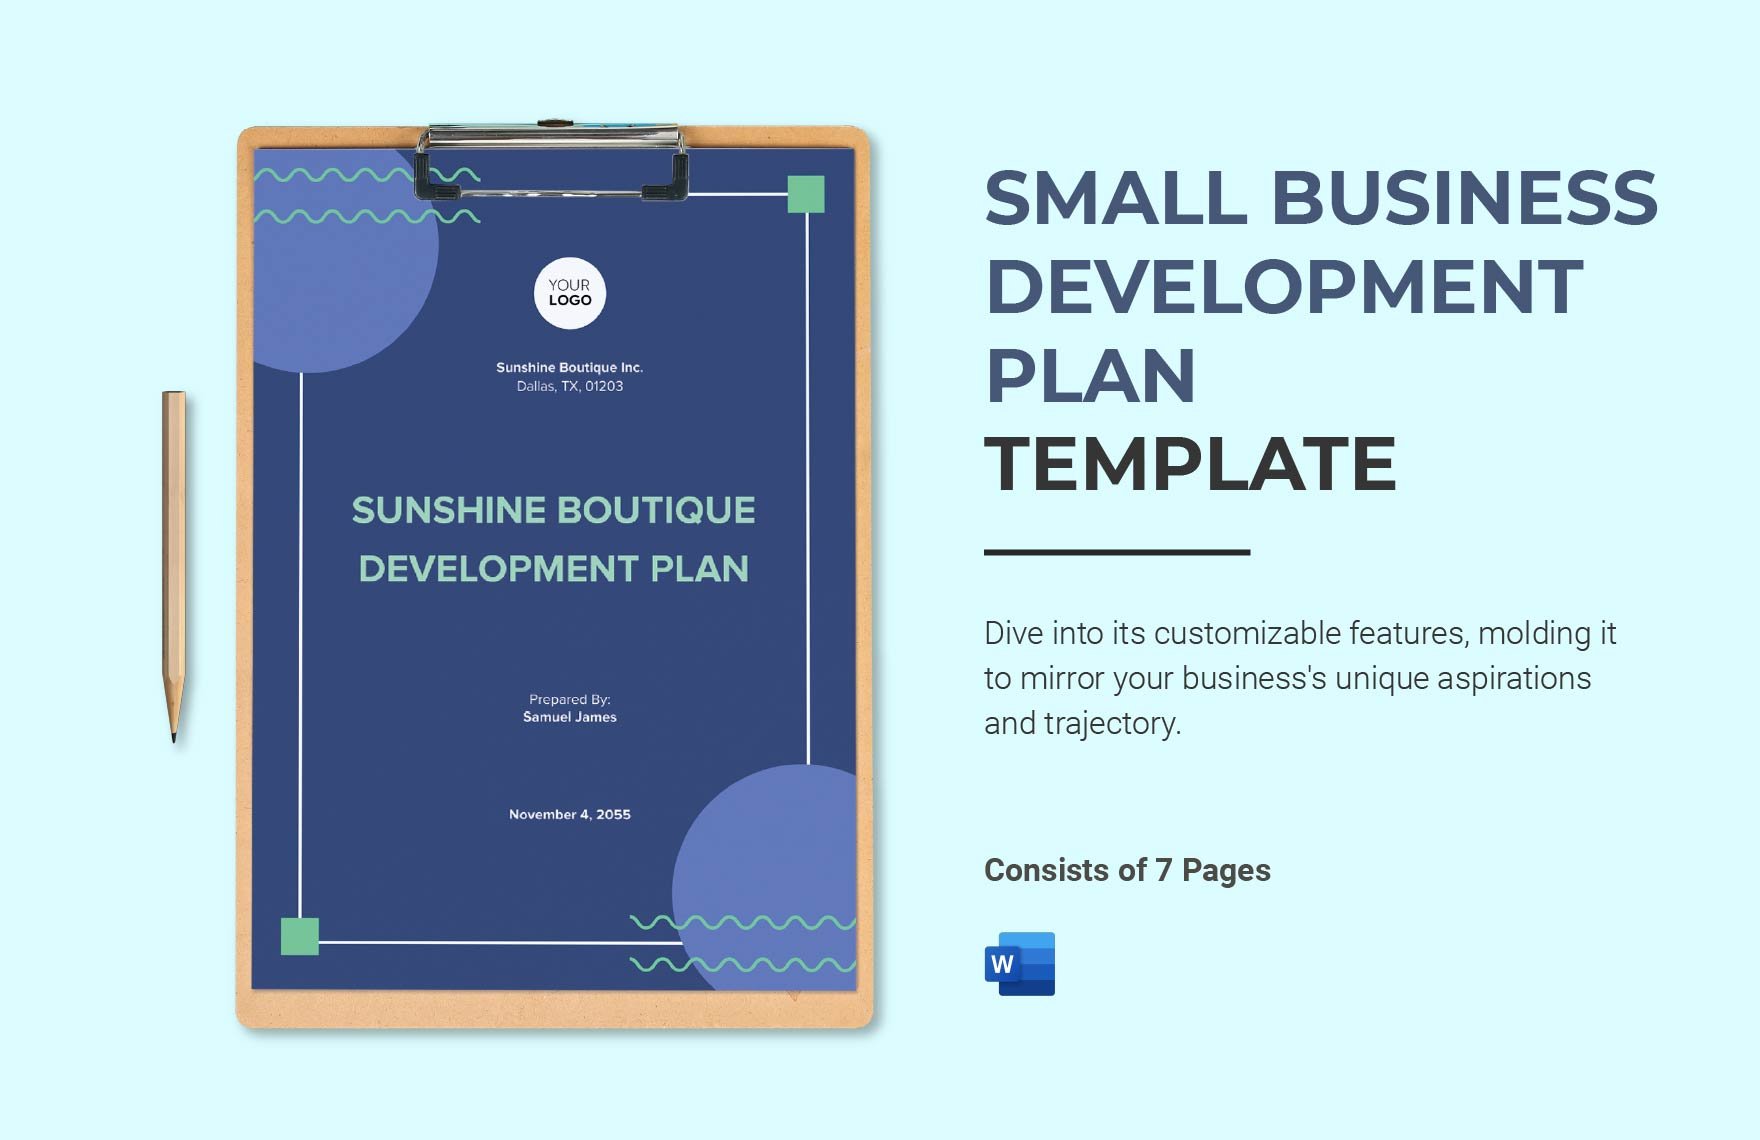 Small Business Development Plan Template